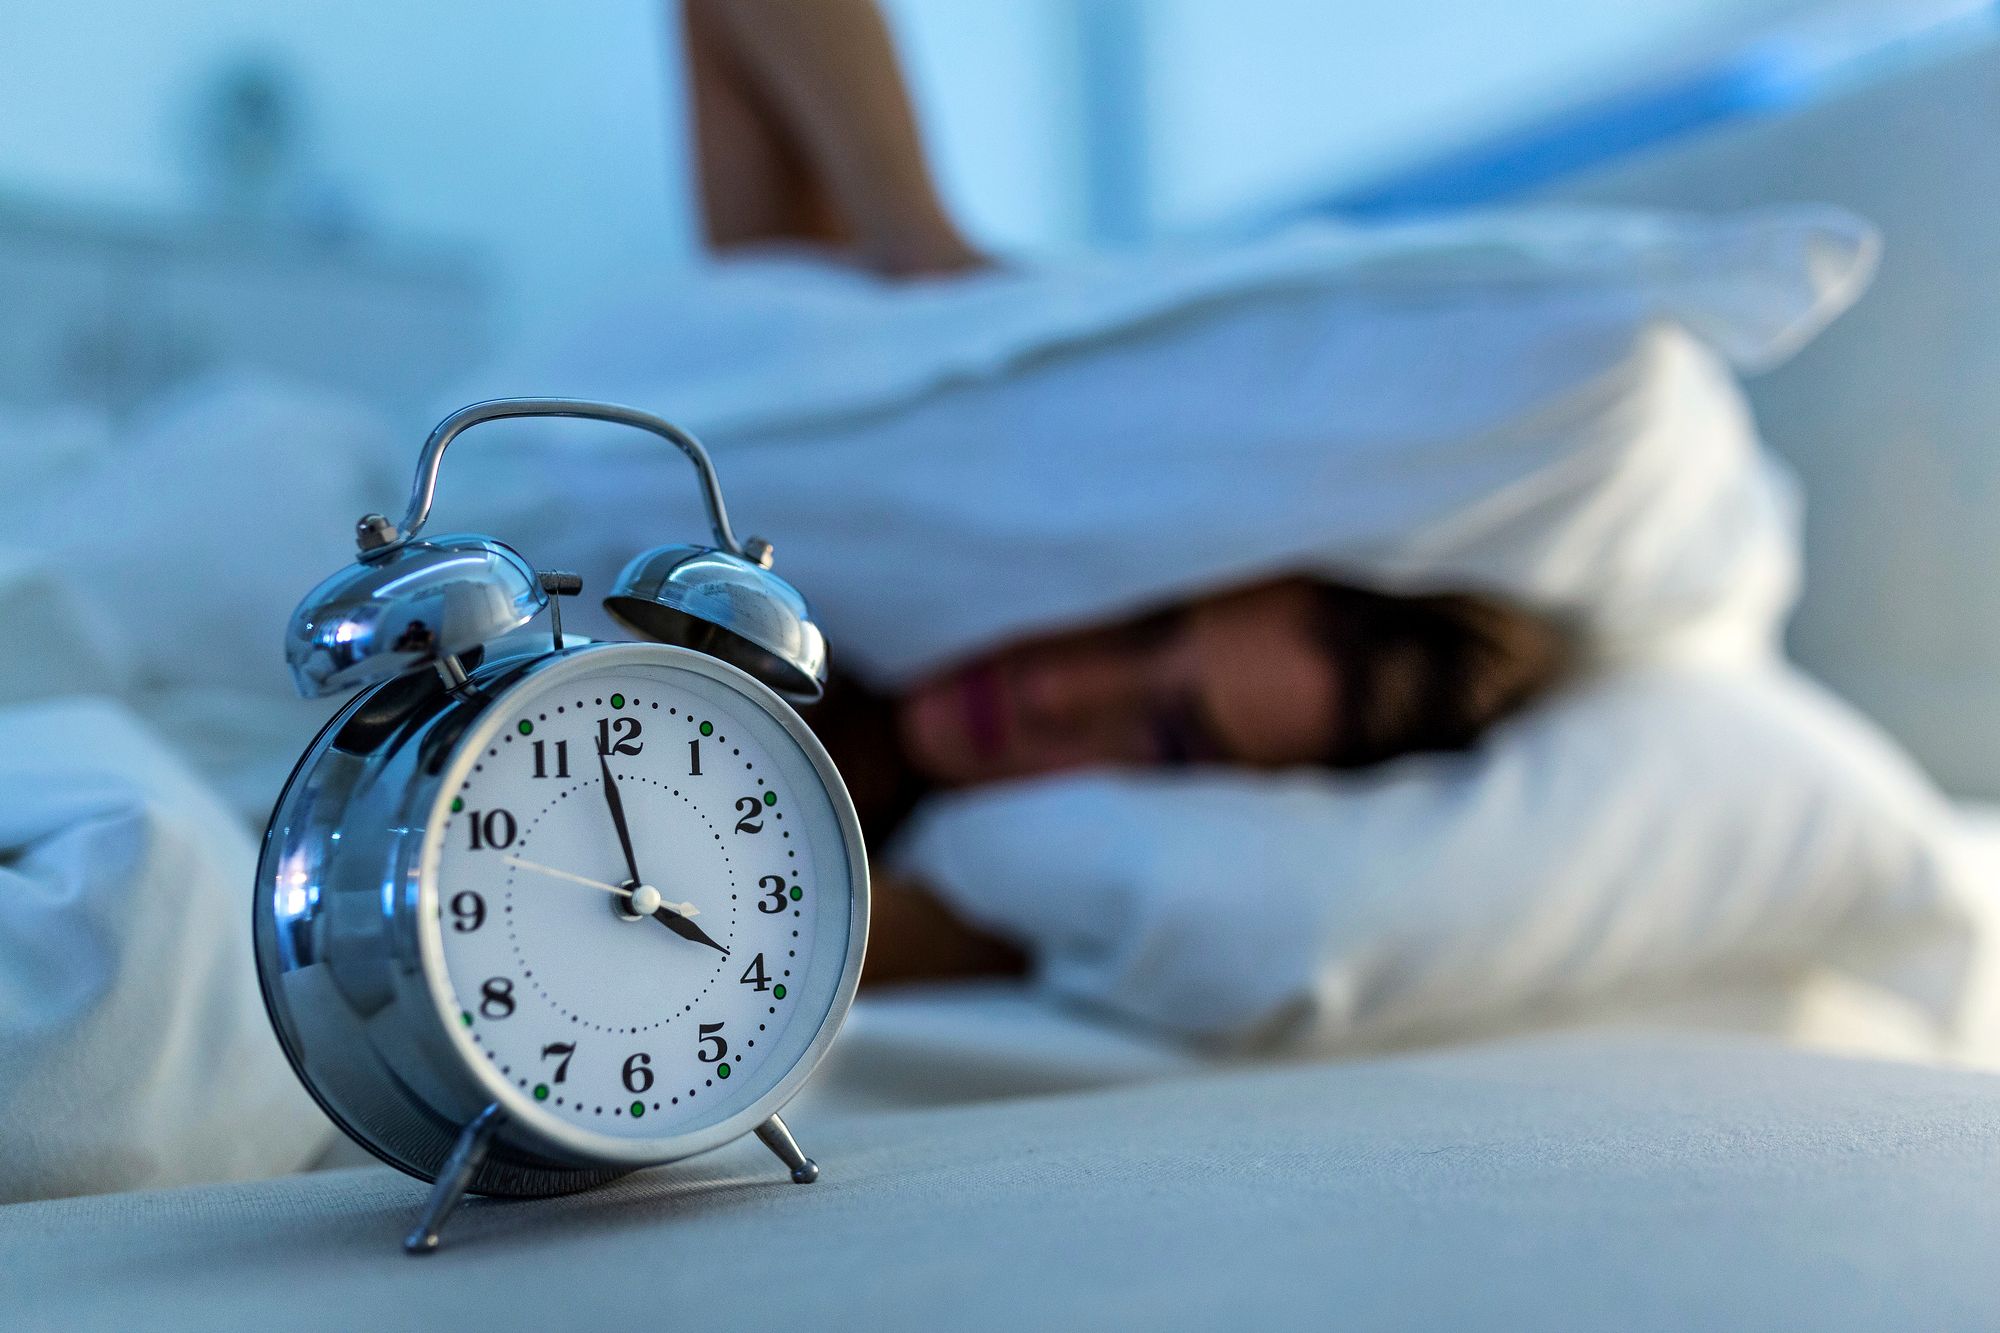 Vaikka unettomuus turhauttaa, kannattaa siihen suhtautua rennosti ja hyväksyä, että välillä ­nukkuu hyvin ja välillä vähän huonommin. Pitkäaikaiseen unettomuuteen kannattaa hakea apua. © iStock